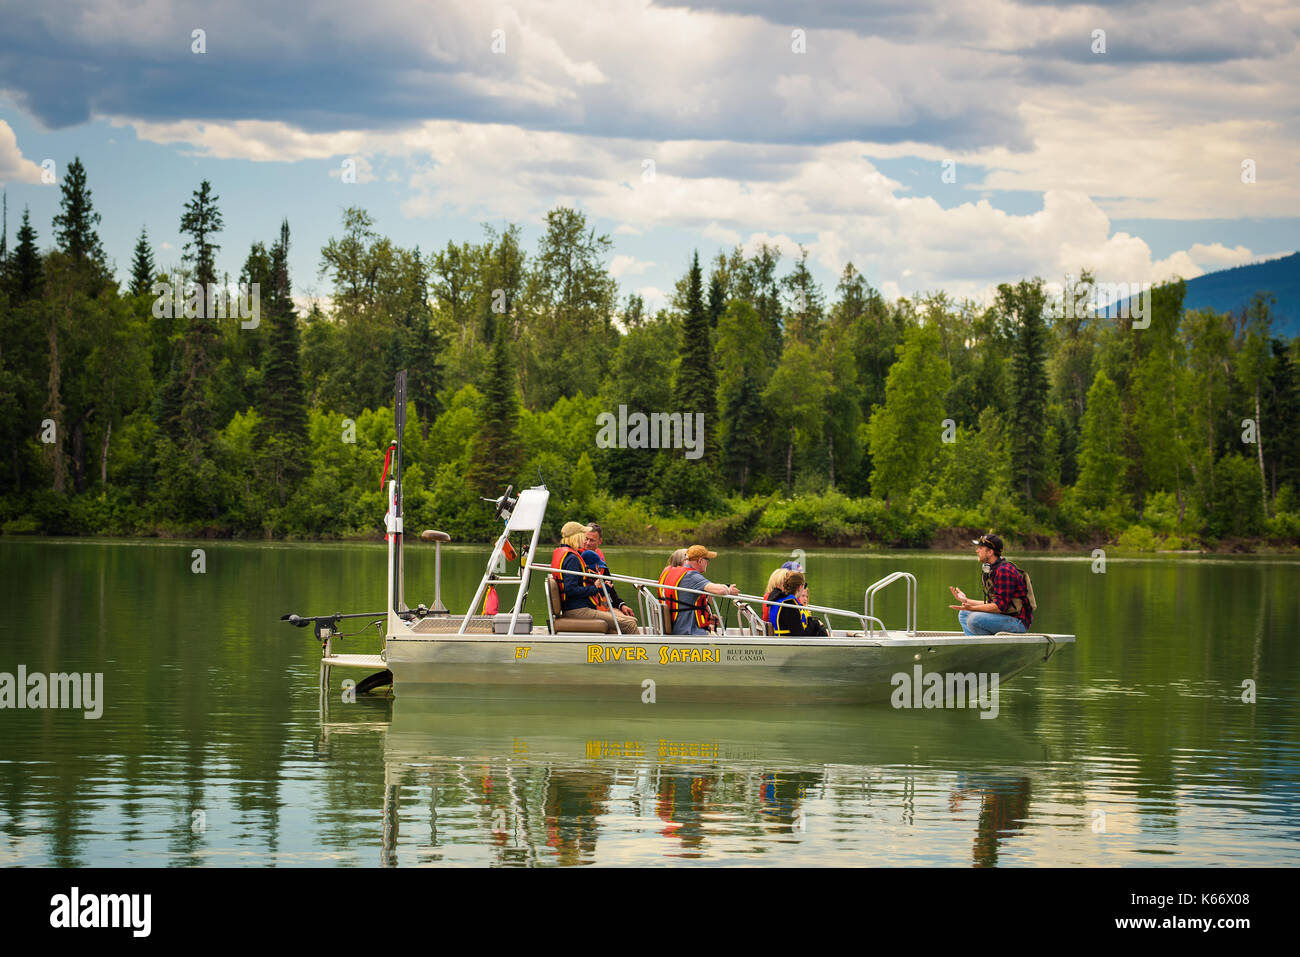 Les touristes en gilets de sauvetage sur un bateau sur une rivière safari tour. Banque D'Images